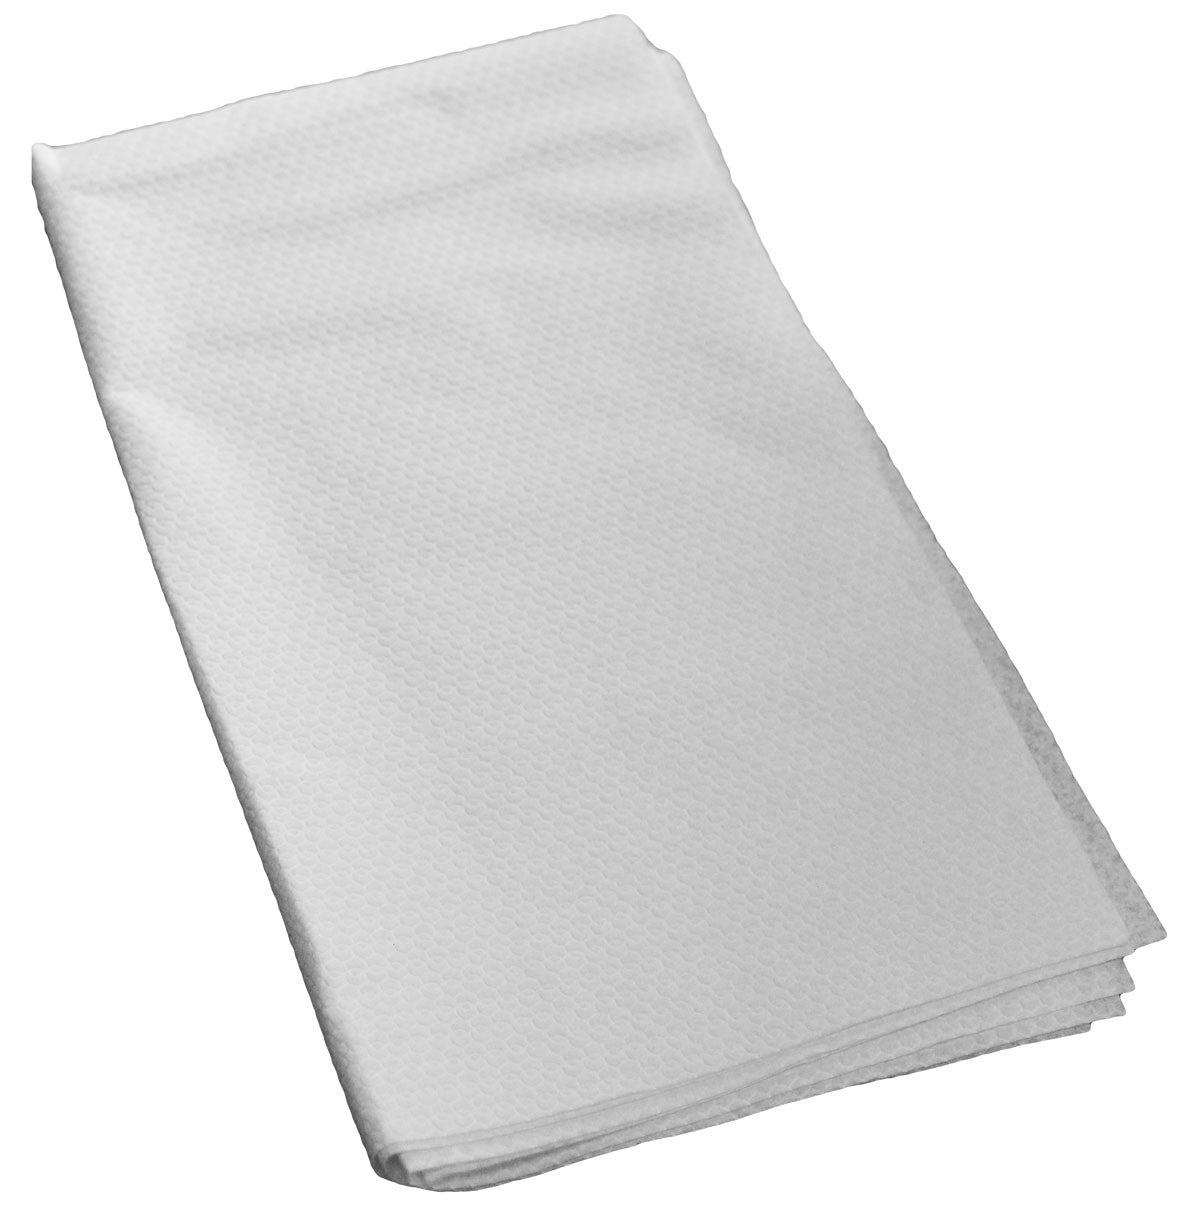 Disposable, Biodegradable Towel 40x70cm